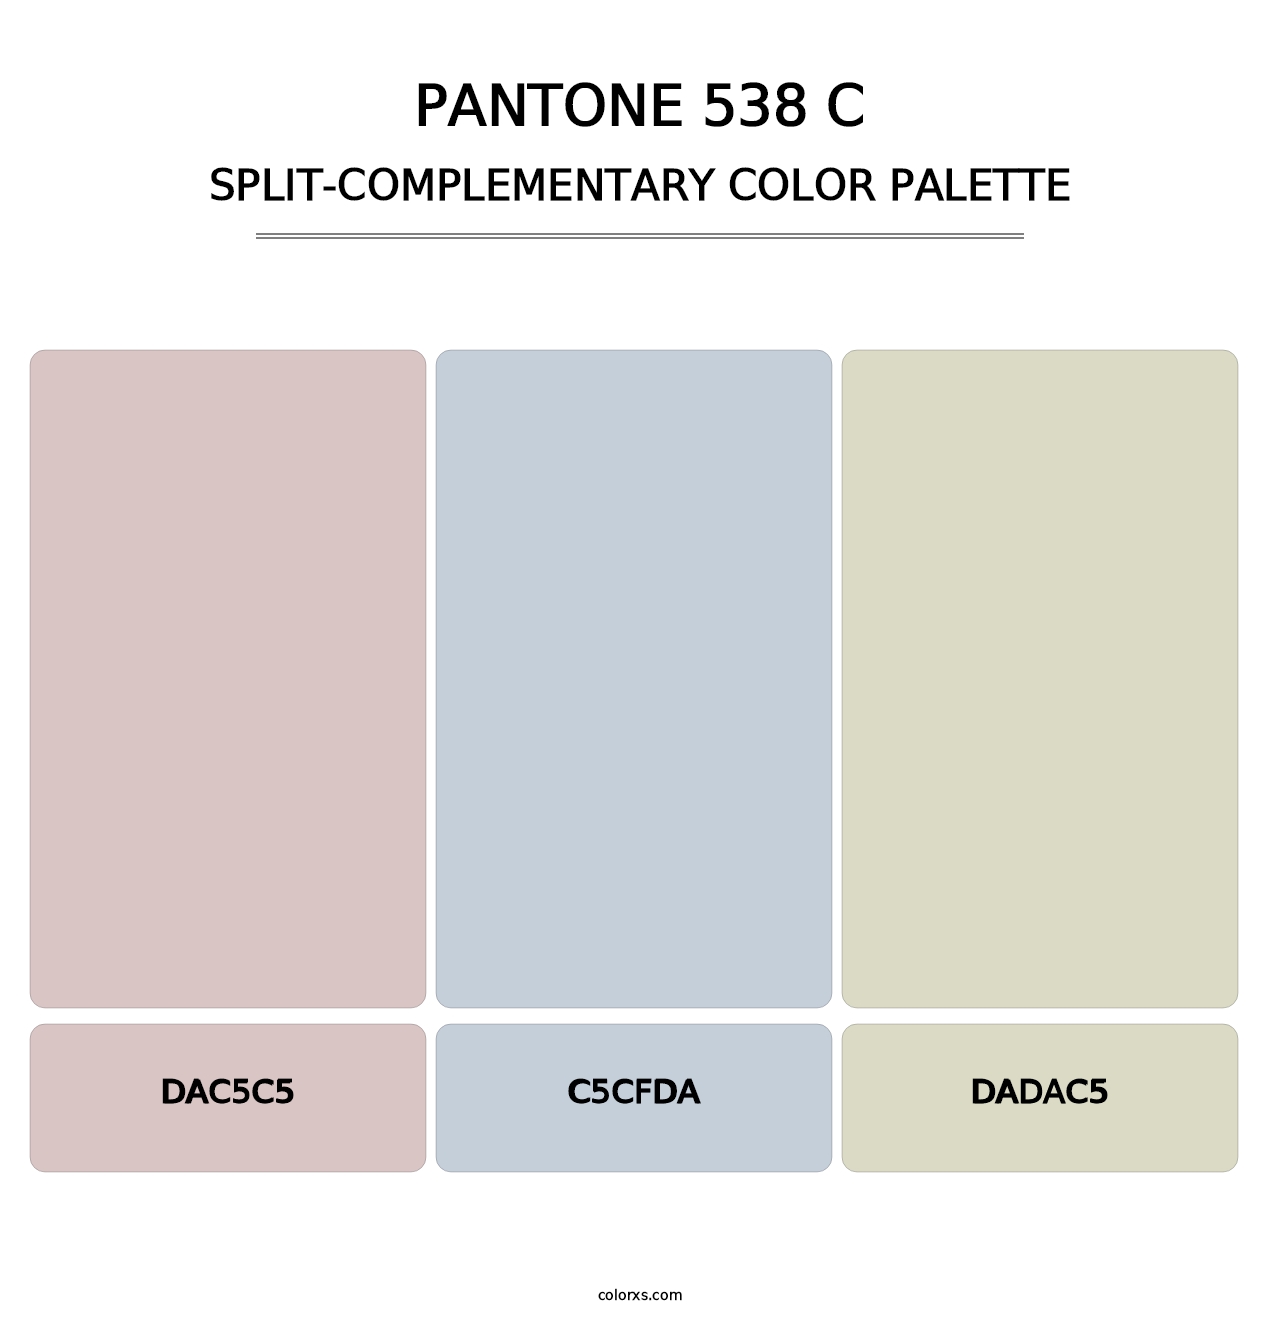 PANTONE 538 C - Split-Complementary Color Palette